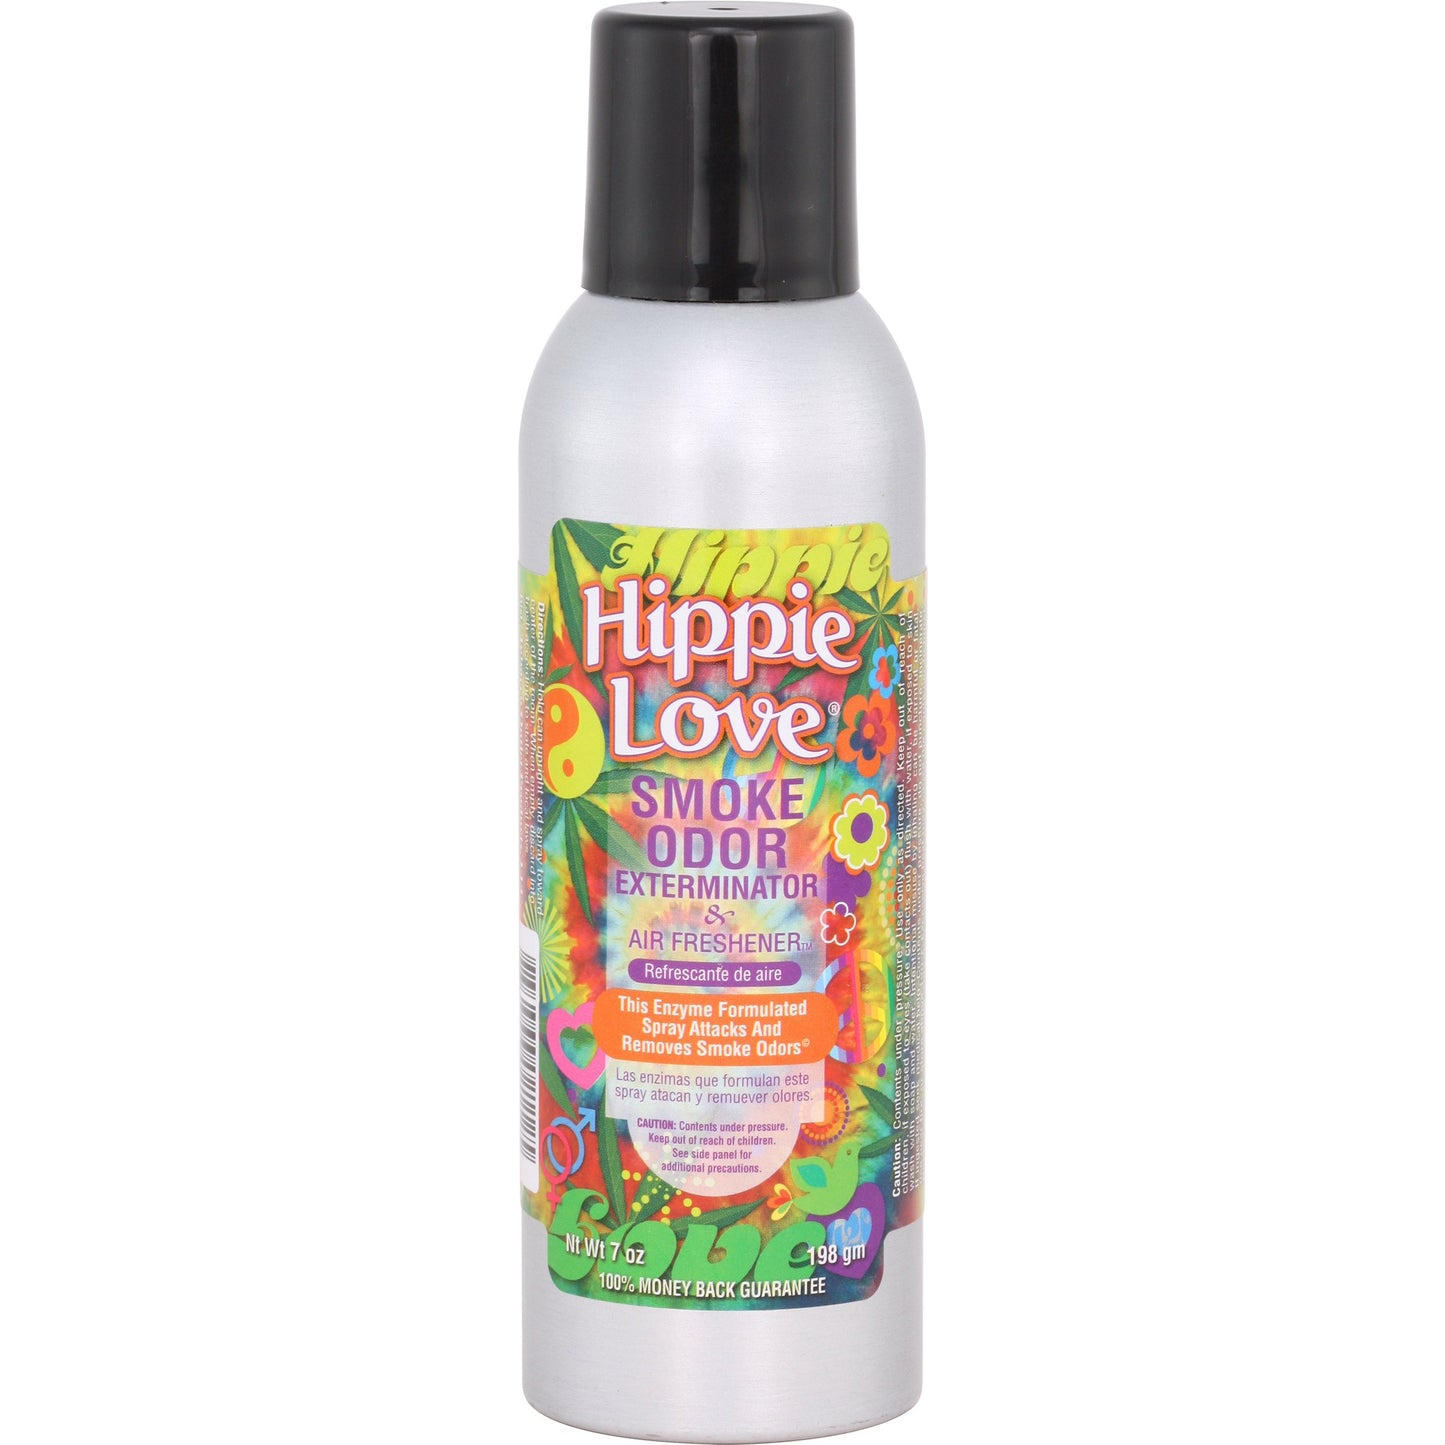 Smoke Odor Exterminator Spray 7oz - Hippie love